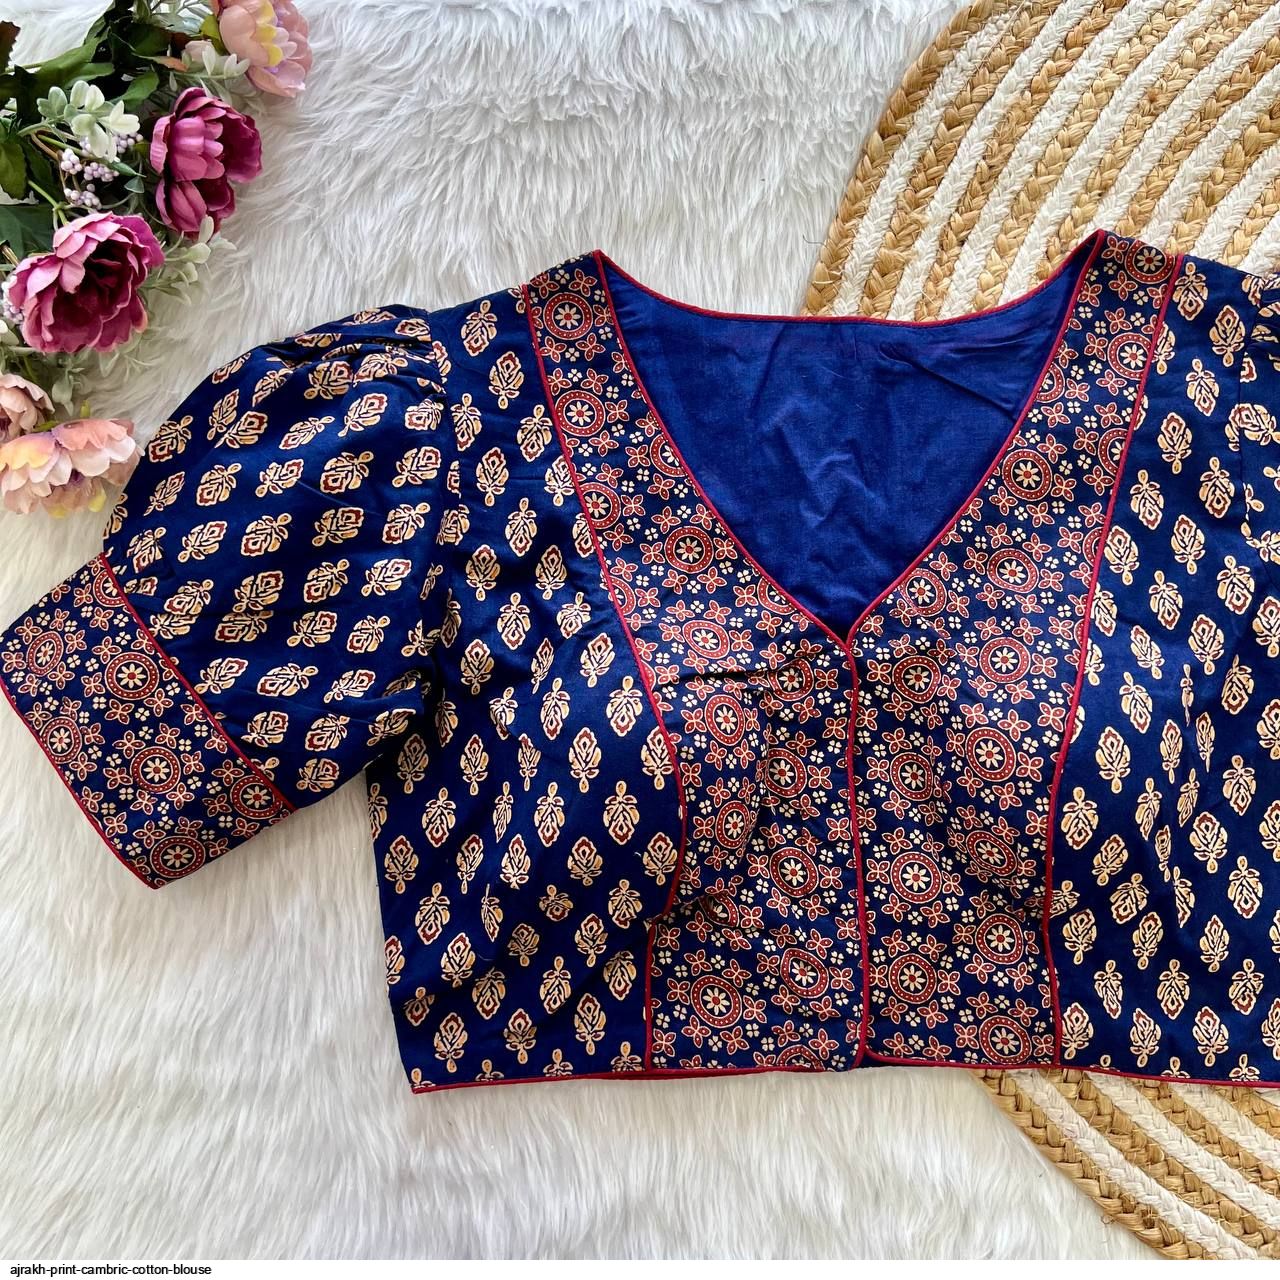 ajrakh print cambric cotton blouse 717